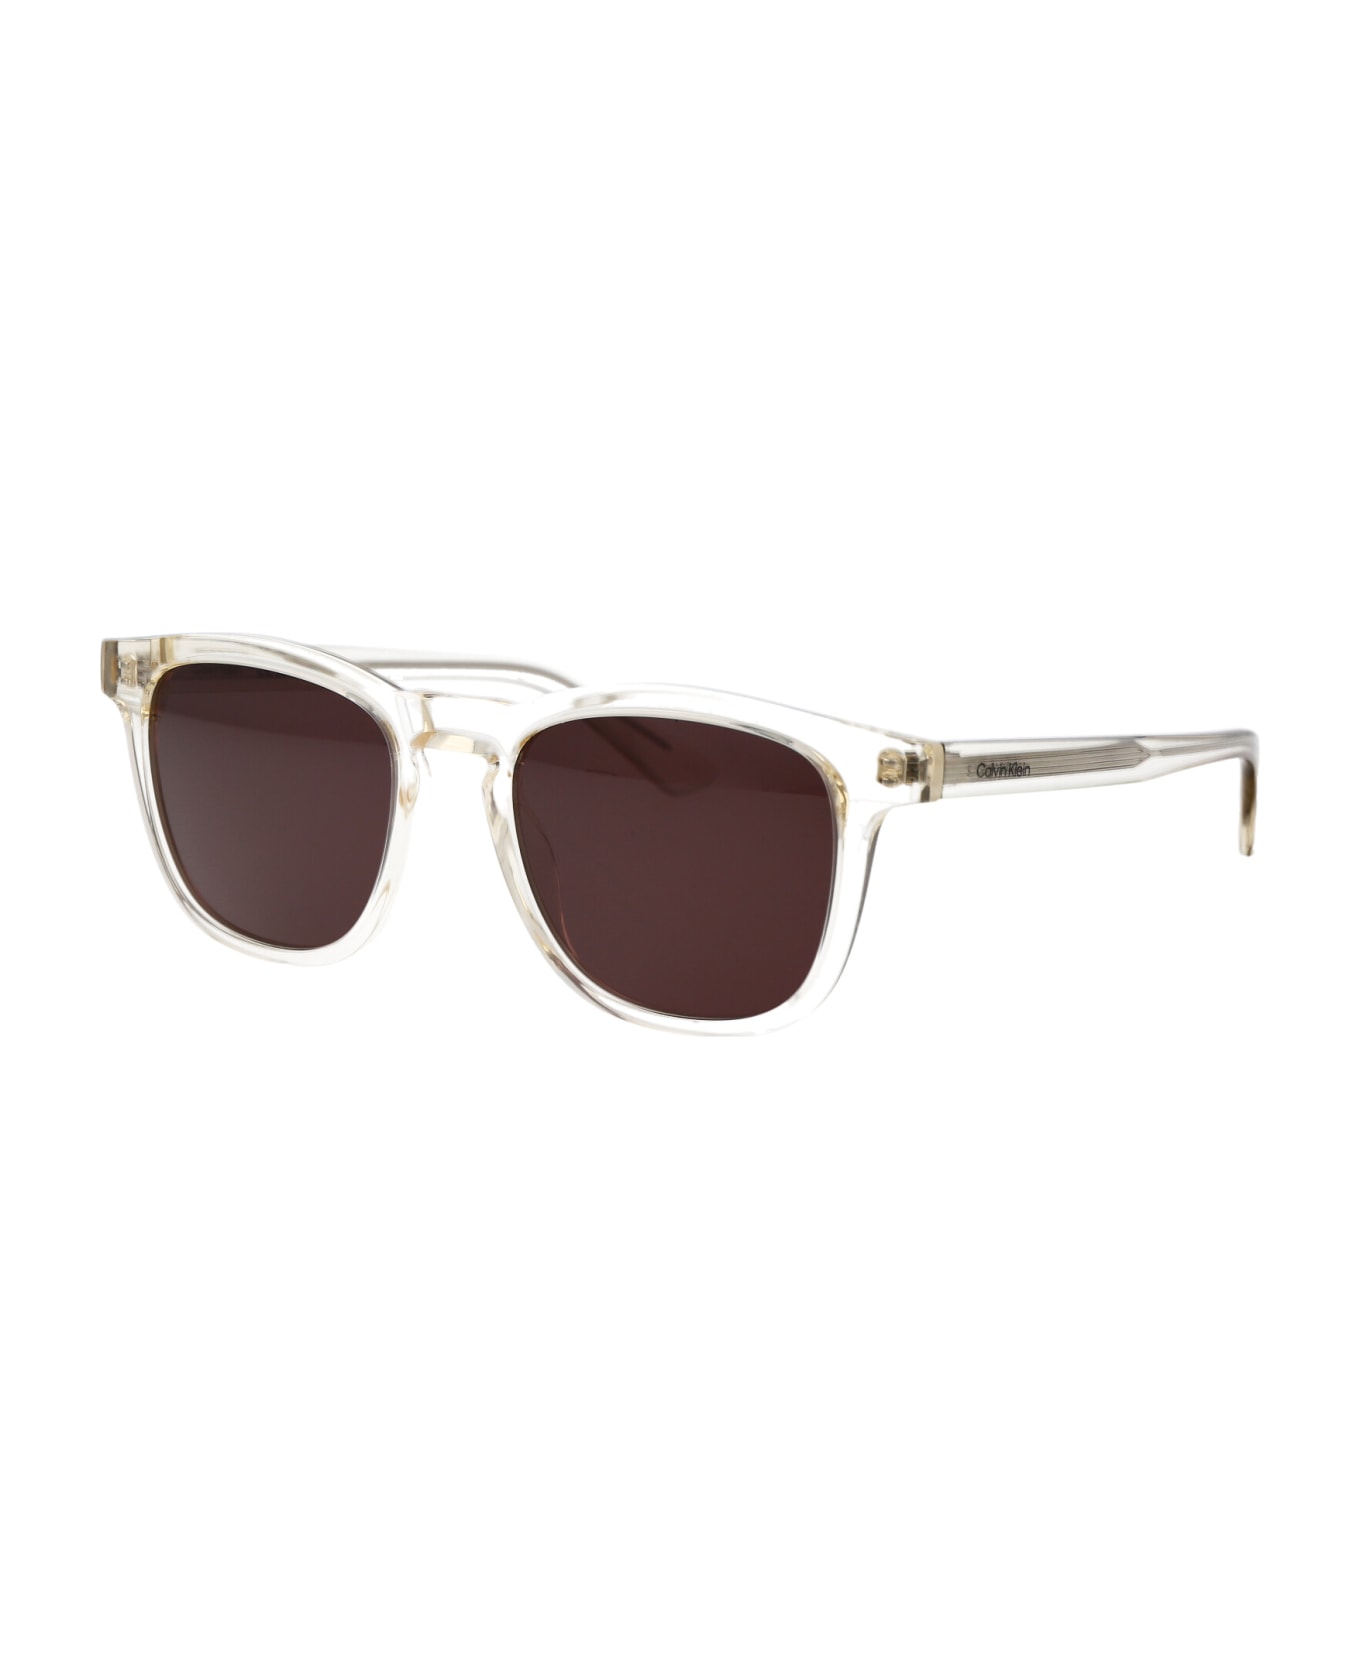 Calvin Klein Ck23505s Sunglasses - 272 SAND サングラス